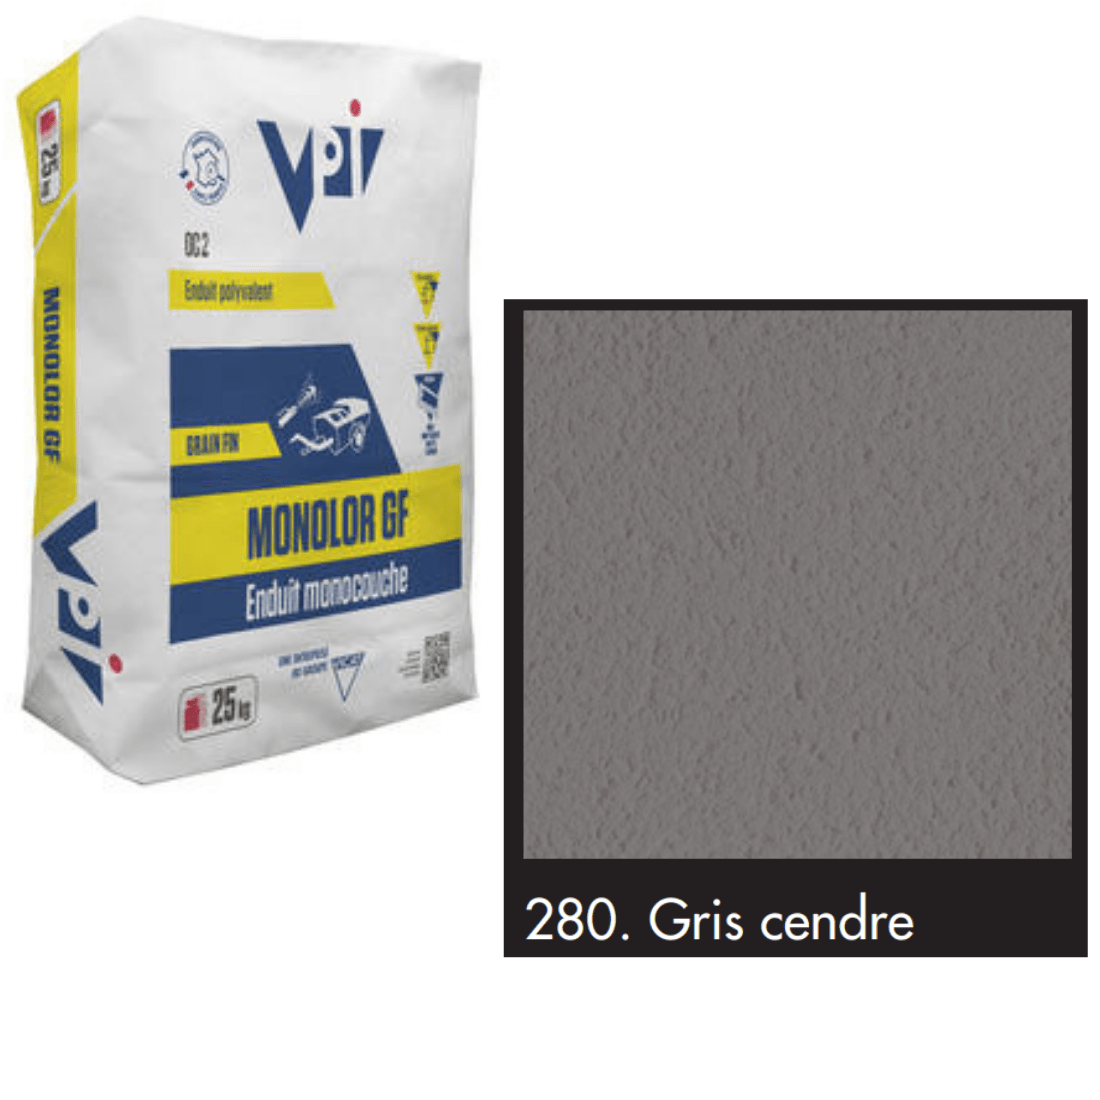 VPI Monocal GM280 Gris Cendre 25kg - Builders Merchant Direct